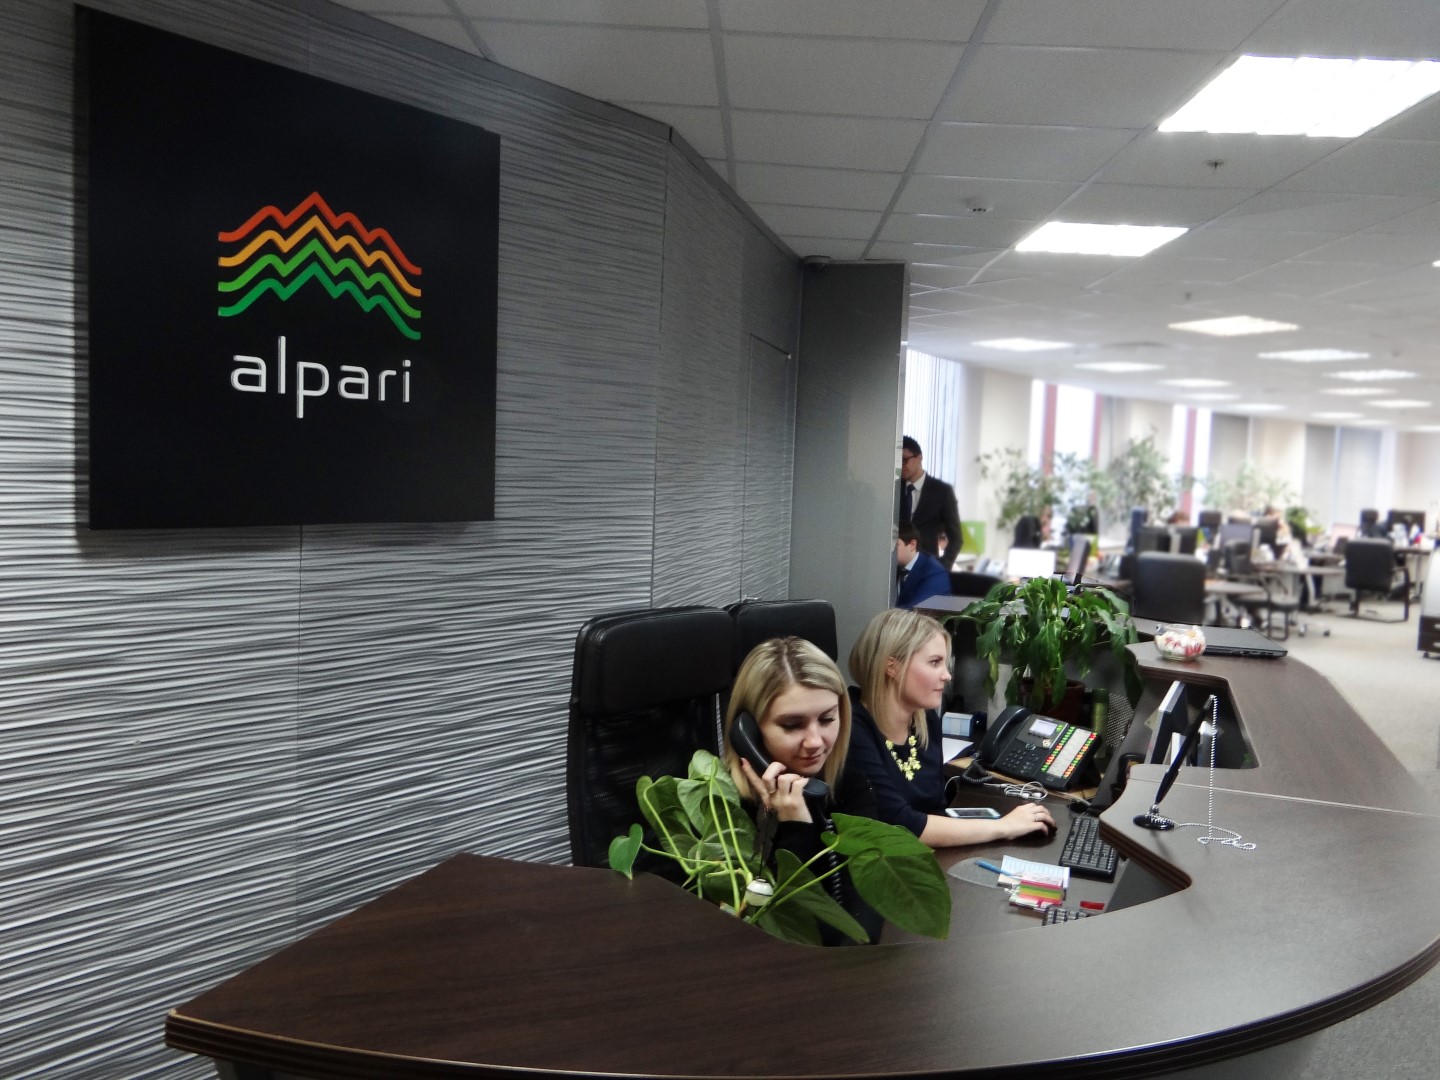 Компанія Alpari, один з найбільших форекс-брендів на Російському ринку, підсумувала напередодні результати своєї торгової діяльності протягом першого півріччя поточного 2017 року і відзначила суттєве зростання обсягів торгівлі, які збільшилися на 16% у порівнянні з аналогічним періодом і перевищили позначку в 600 млрд дол